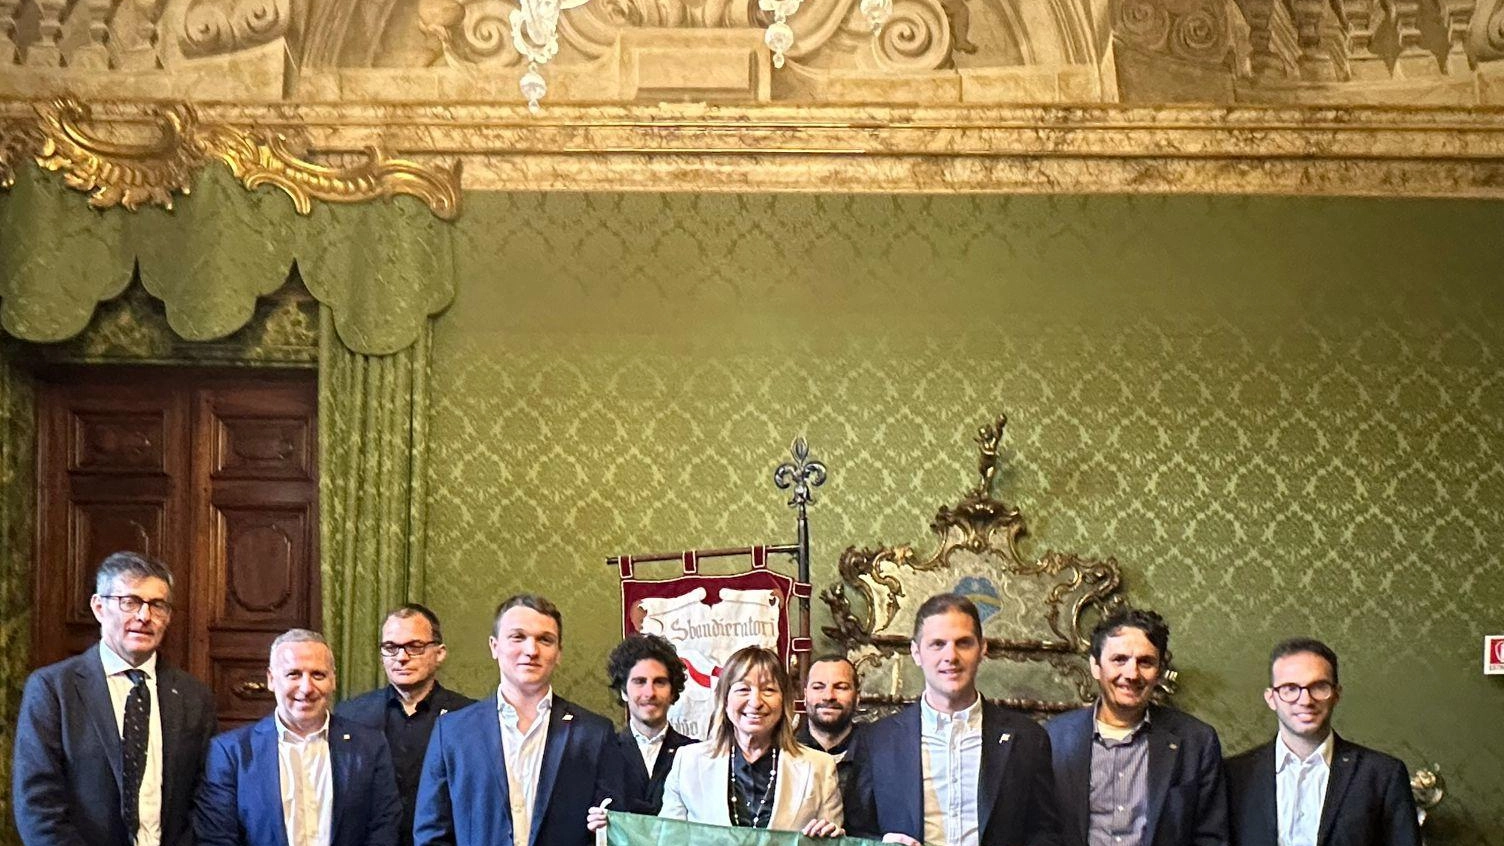 Il Gruppo Sbandieratori Città di Gubbio riceve un prestigioso riconoscimento dalla Regione. La presidente Donatella Tesei dona la bandiera con lo stemma regionale, consolidando il legame iniziato nel 1979. Prossima esibizione il 25 aprile in Piazza San Giovanni.